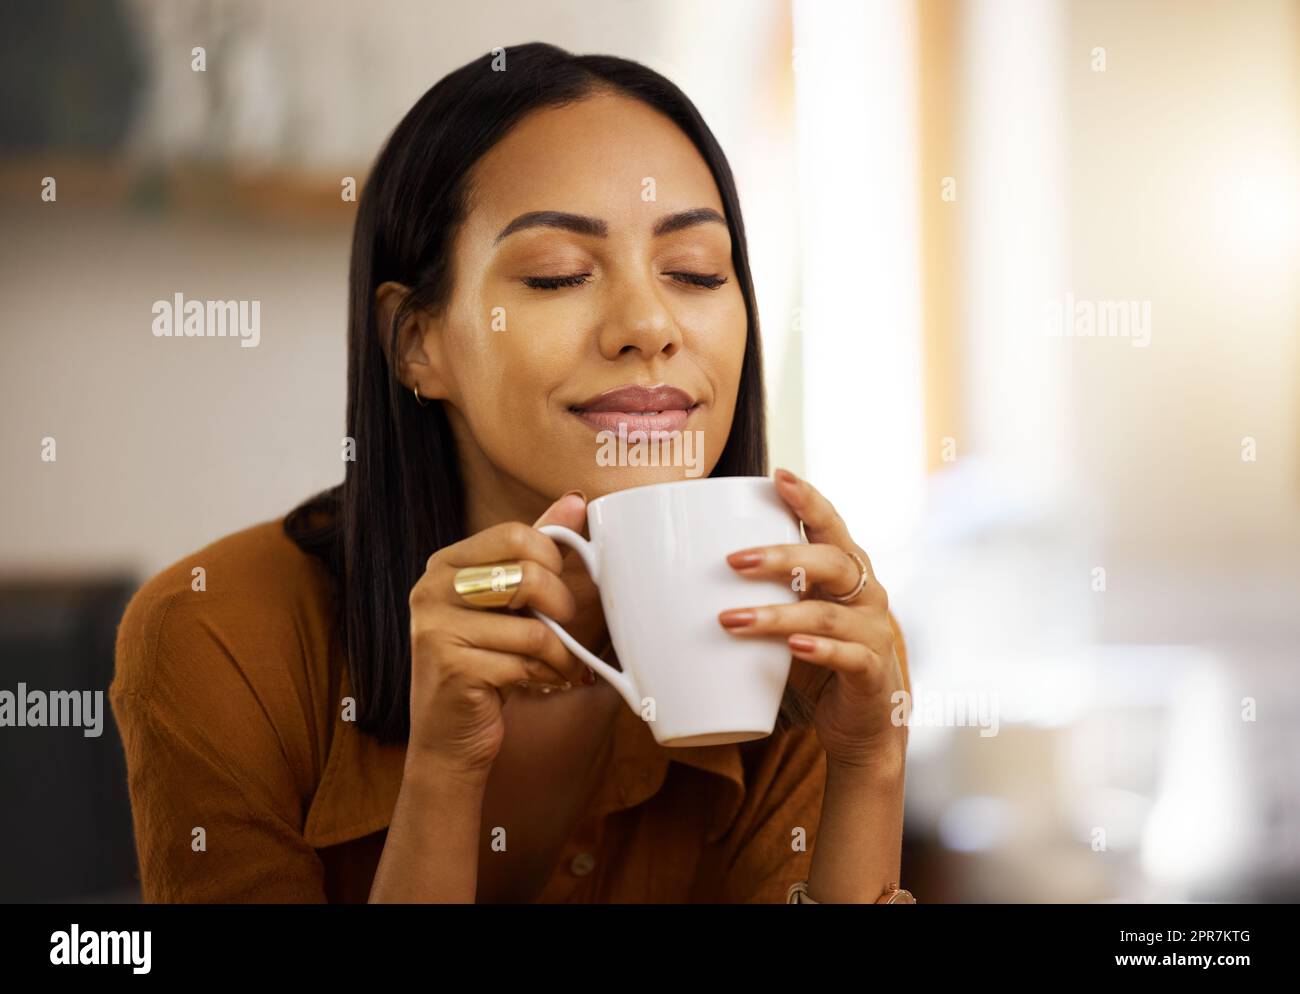 Junge, glückliche, wunderschöne Mischrasse Frau, die eine Tasse Kaffee allein zu Hause genießt. Hispanische Frau in ihren 20s, die lächelt, während sie eine Tasse Tee in der Küche zu Hause trinkt Stockfoto